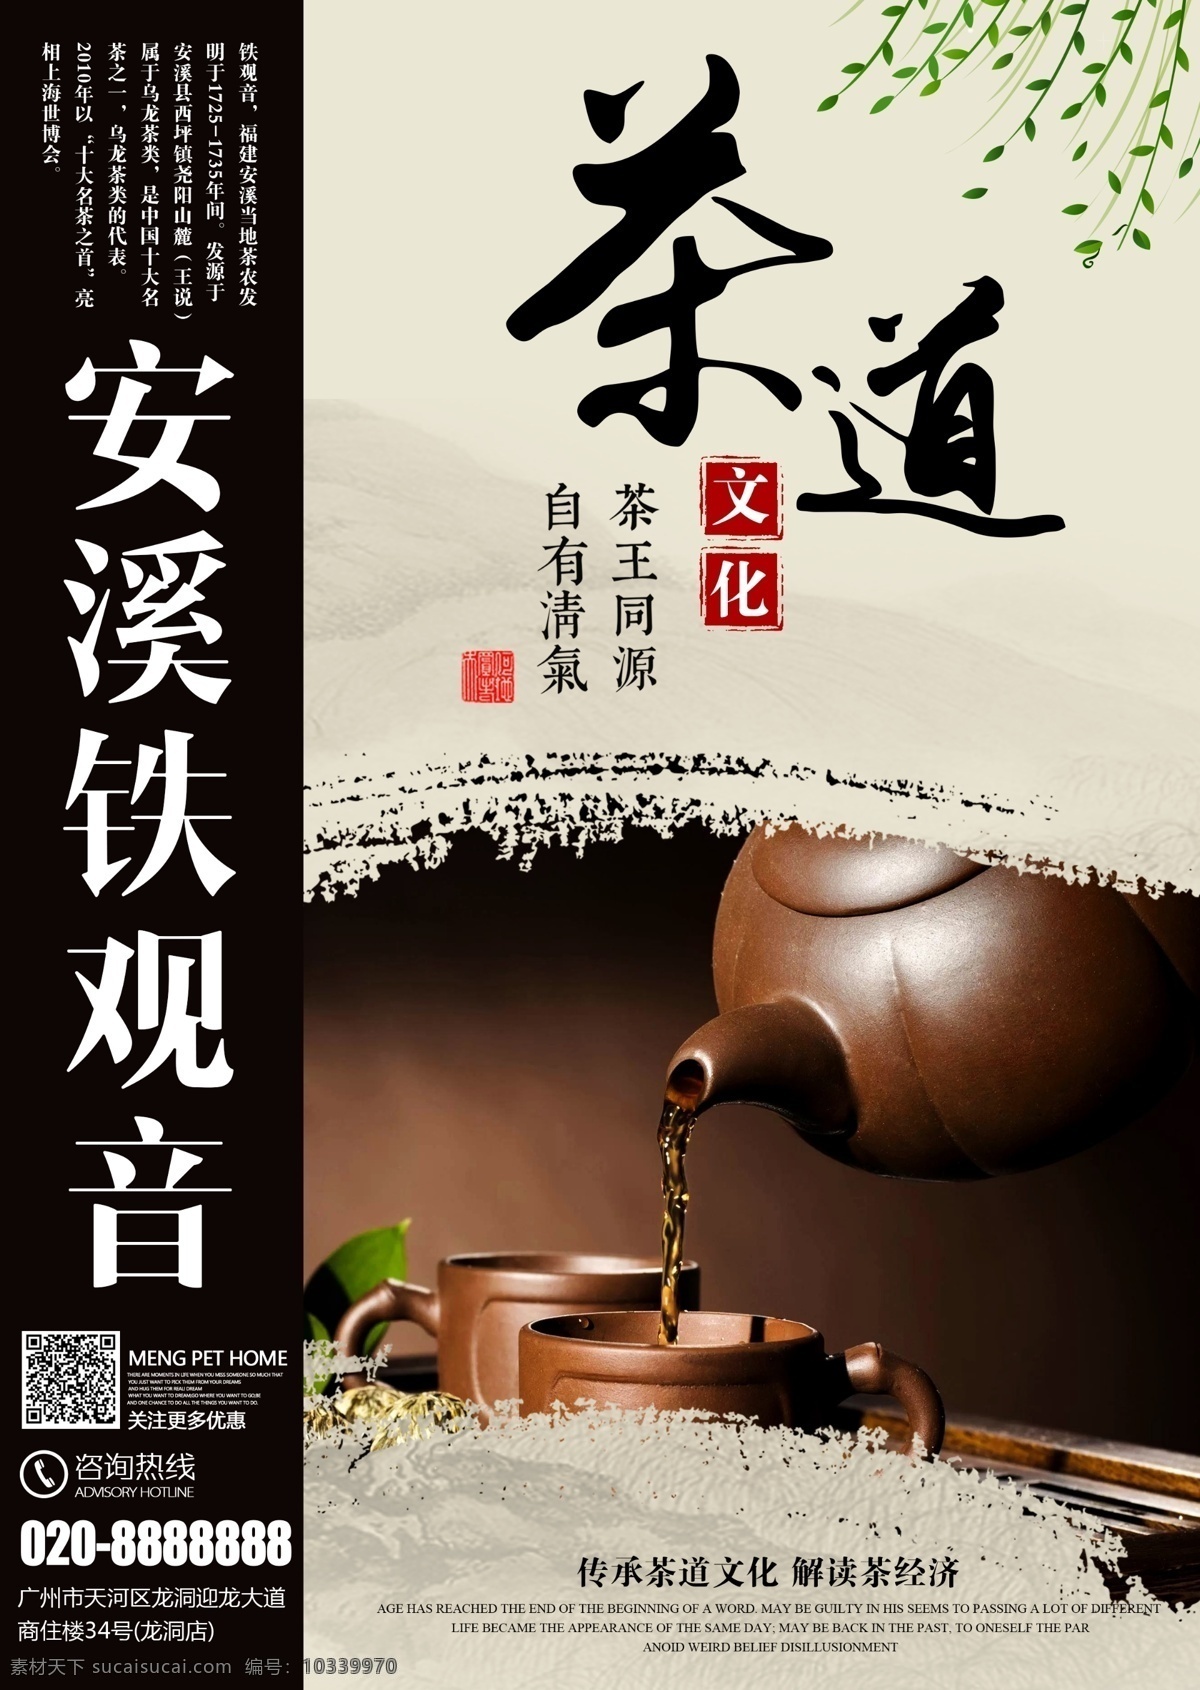 茶道 文化 宣传海报 安溪铁观音 茶 茶叶 茶壶 中国风背景 水墨痕迹 茶香 企业文化 卖茶 商业海报